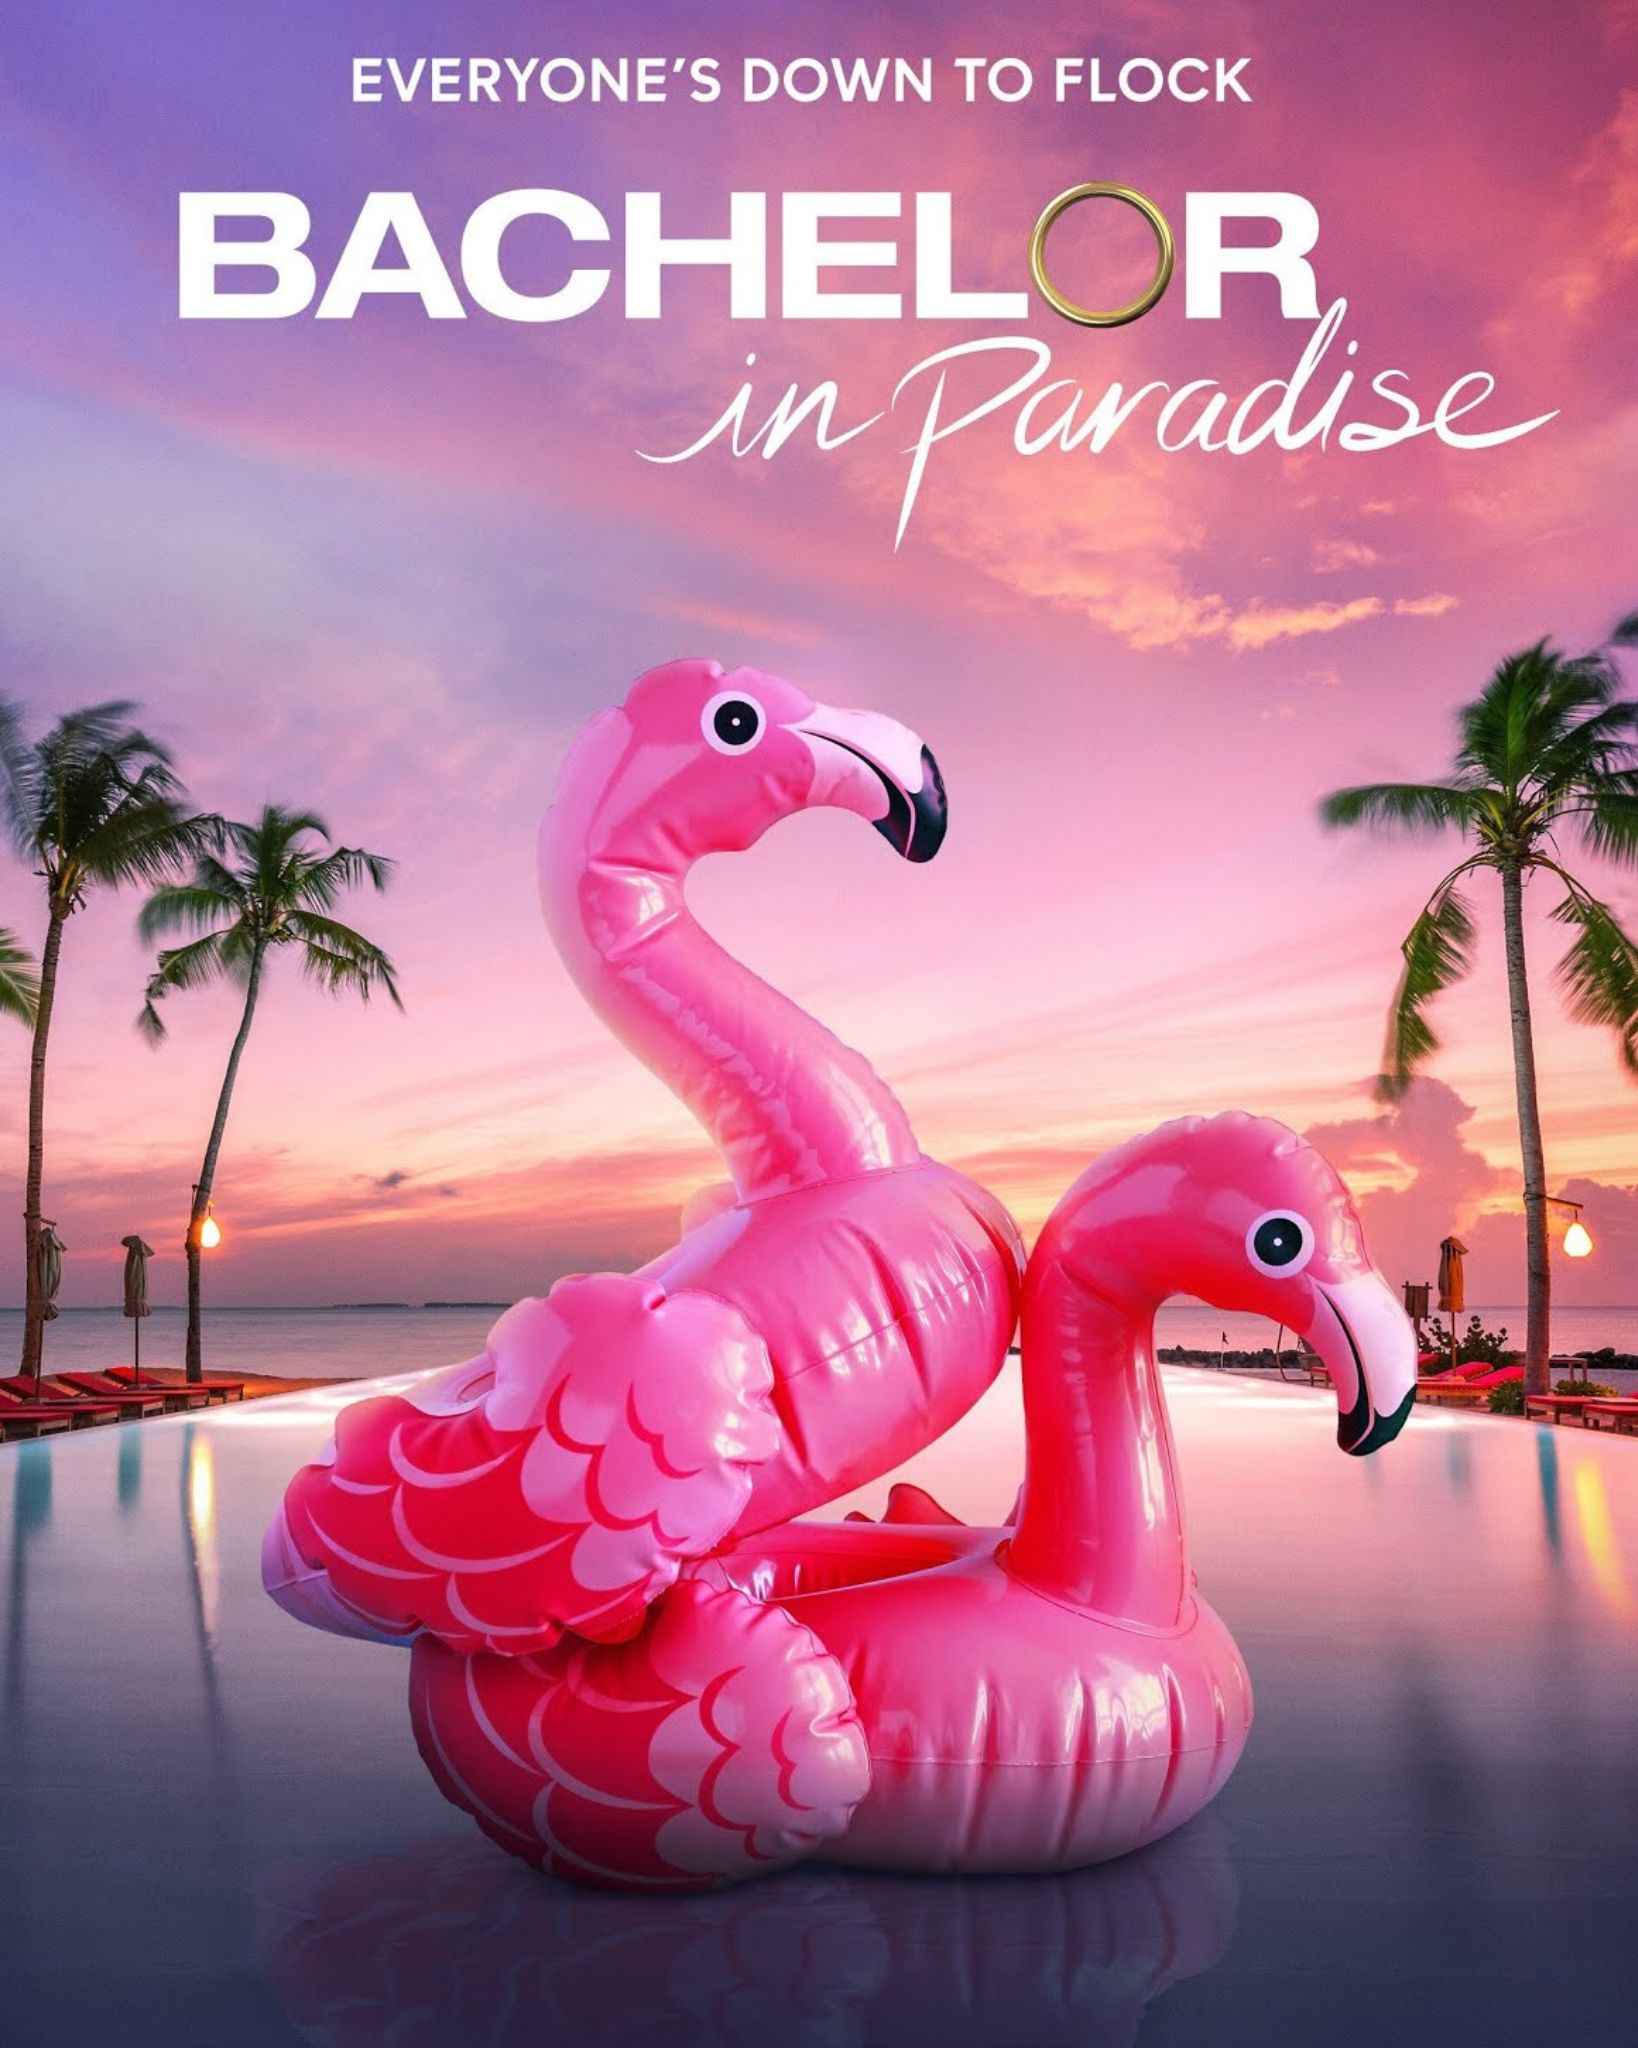 Bachelor In Paradise Season 8